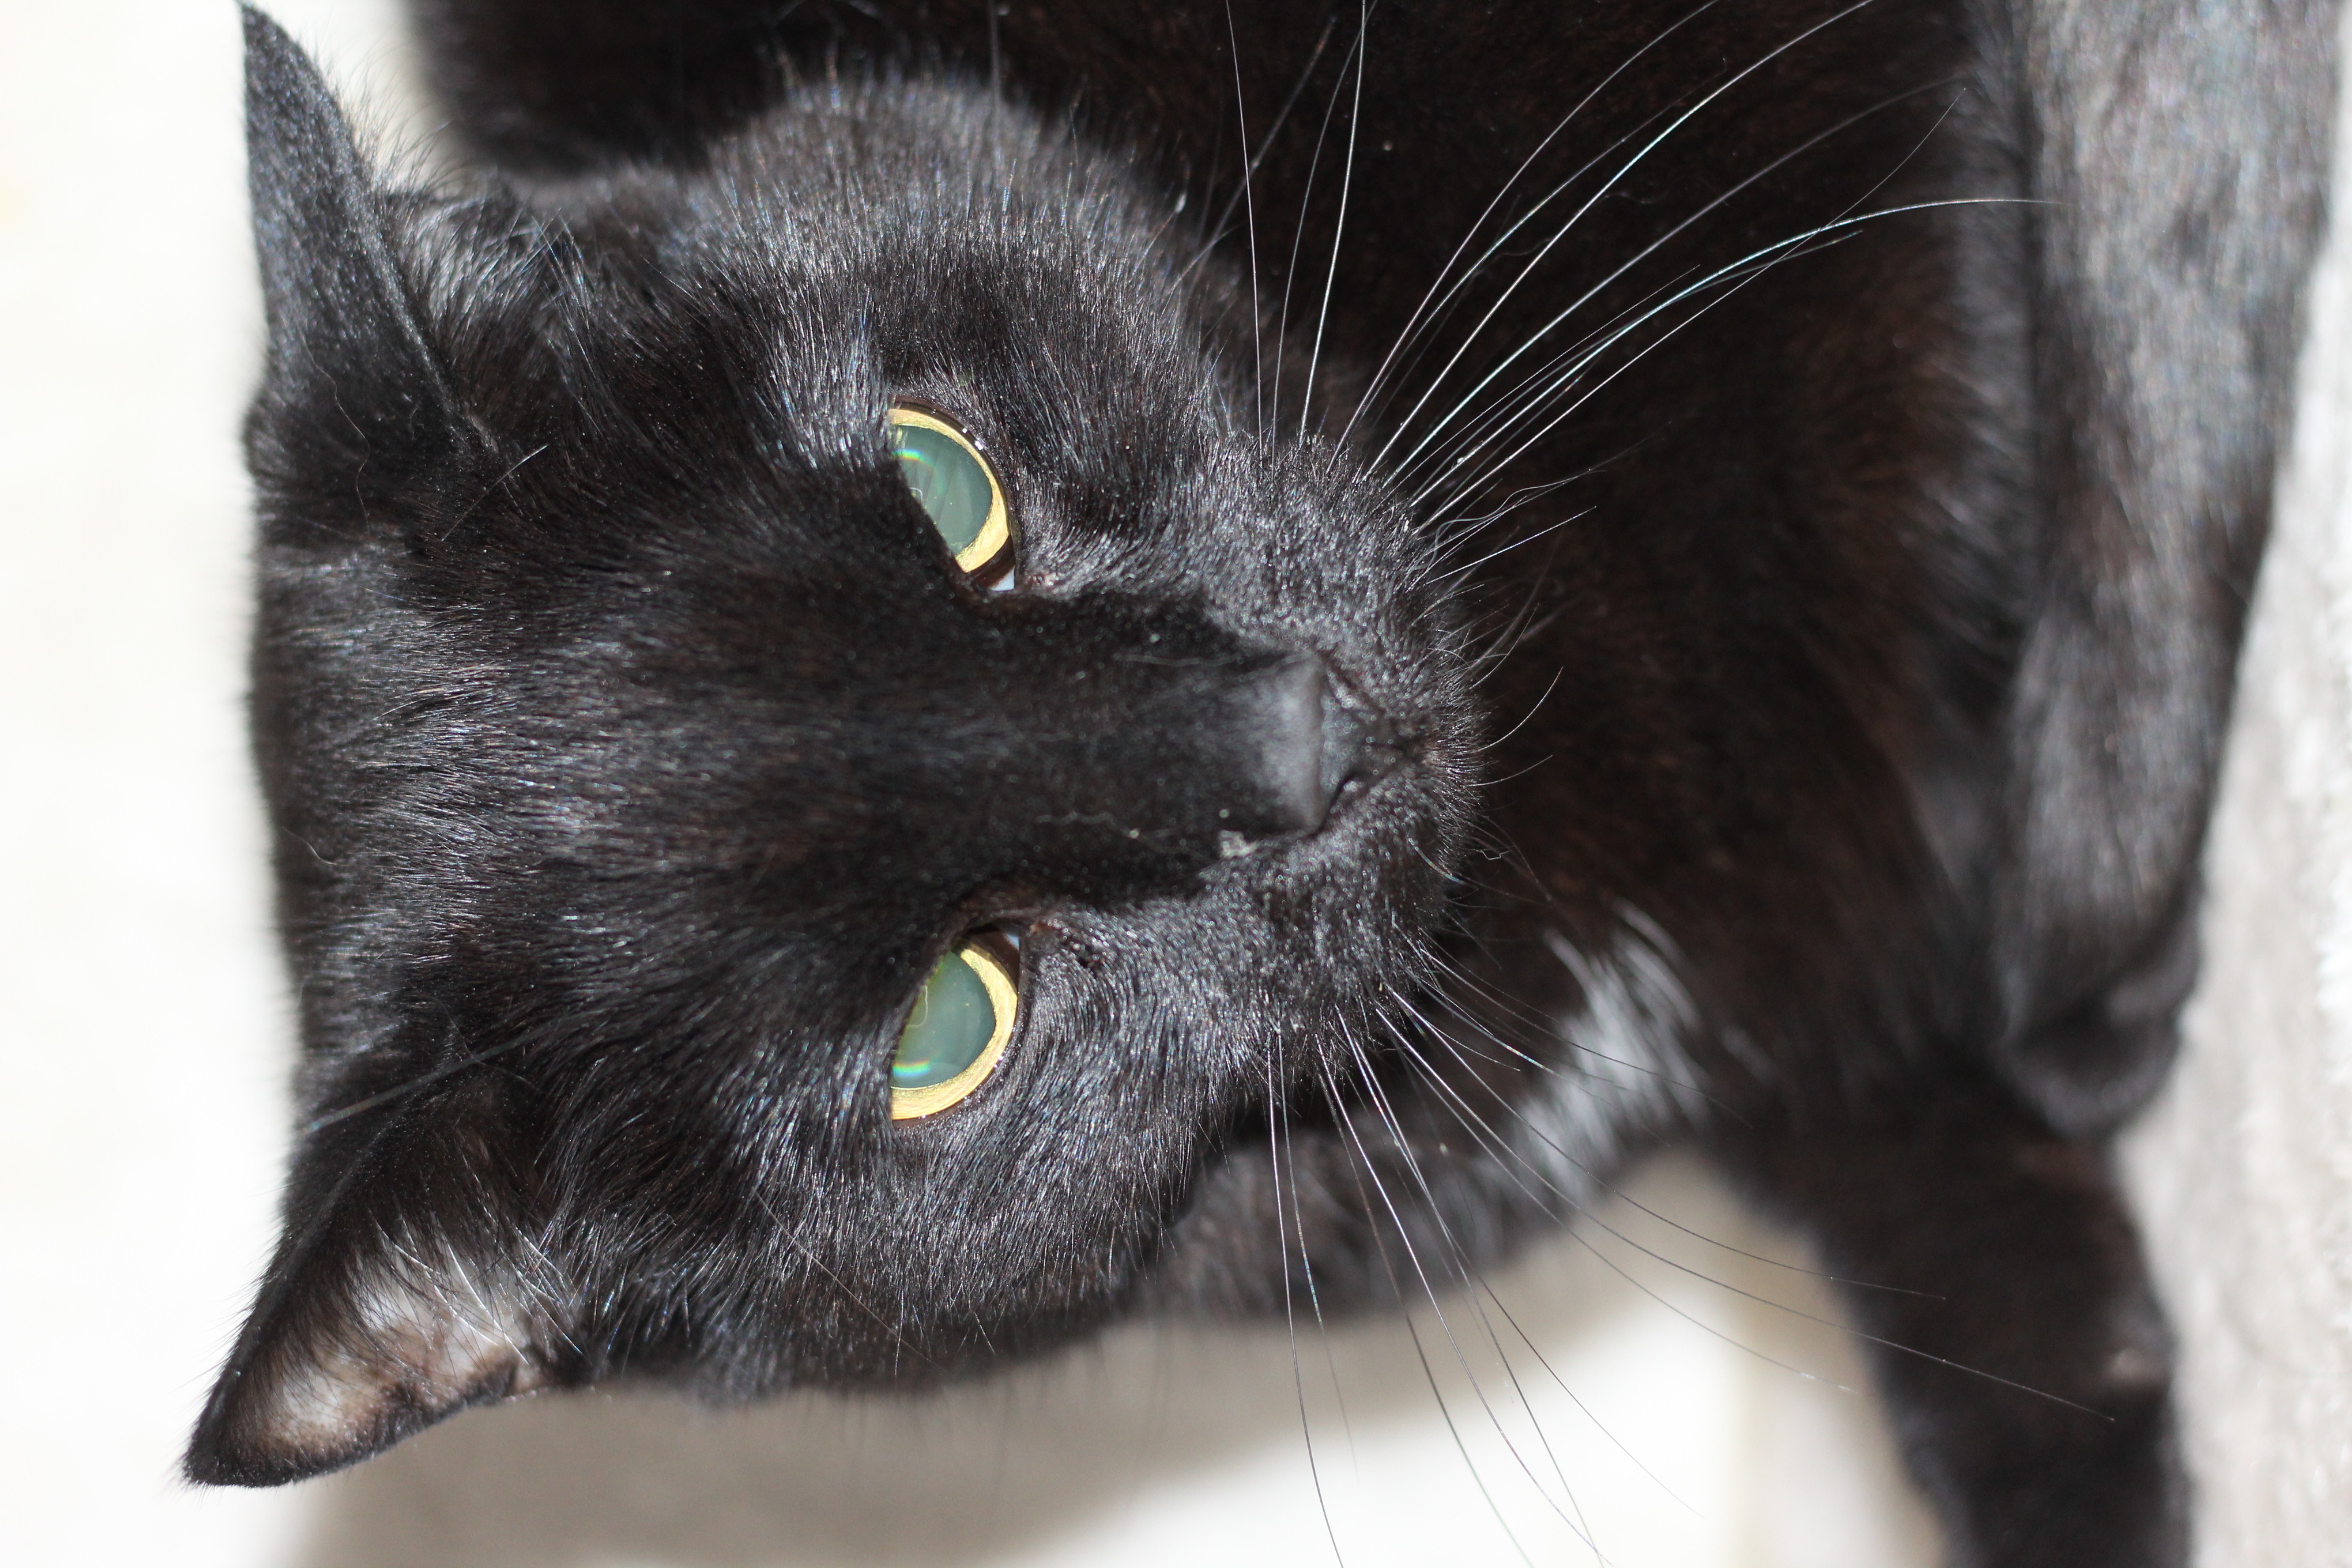  INDEKAT - Malthe er en sød hankat på 8 år - han er meget nervøs og skal have roligt hjem - gerne med andre katte - kan bo med vanilla